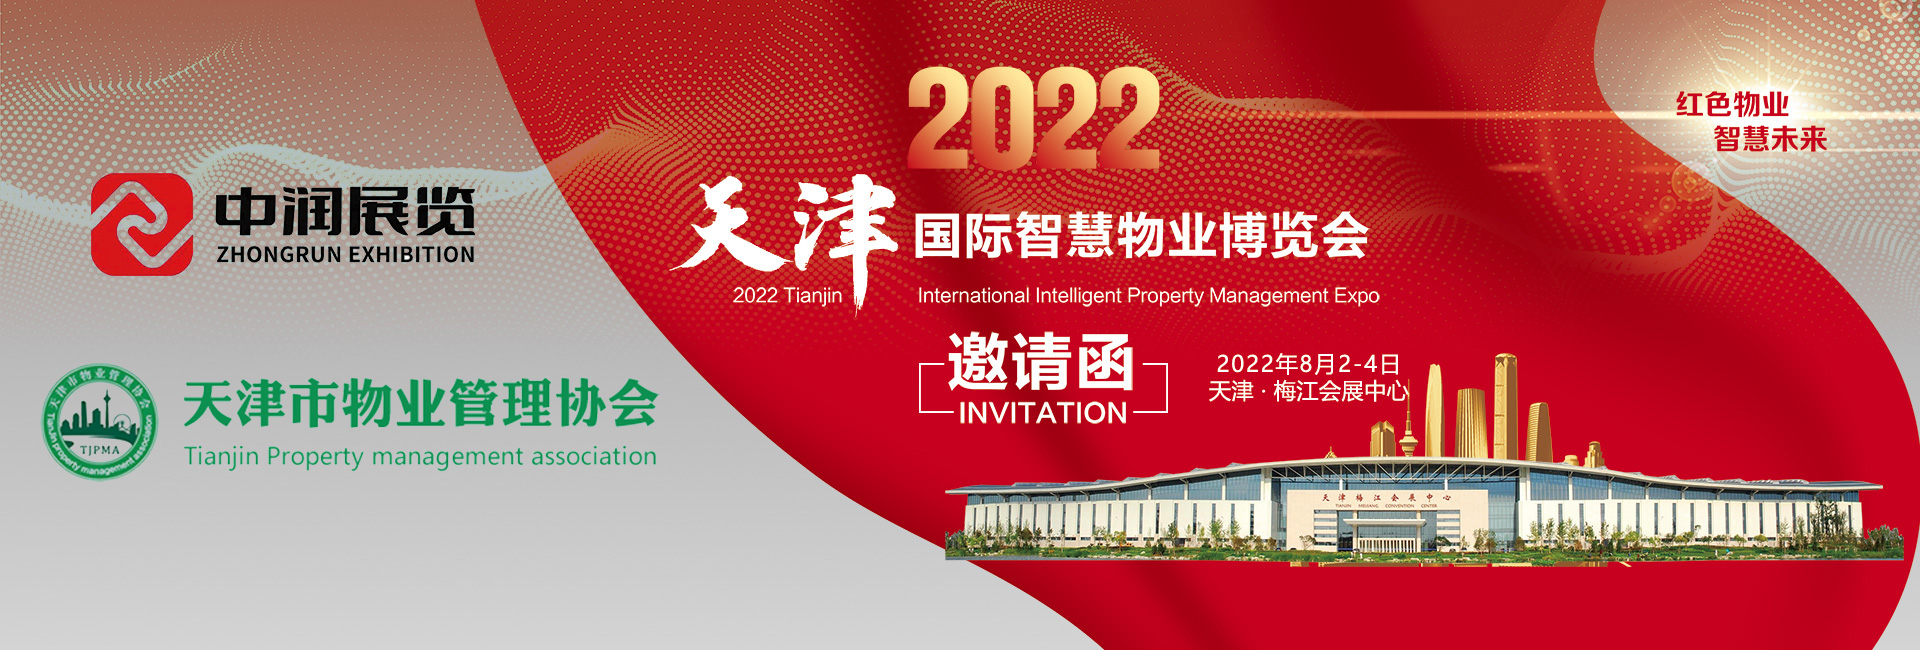 2022天津国际智慧物业博览会将于8月2日-4日在天津举办！